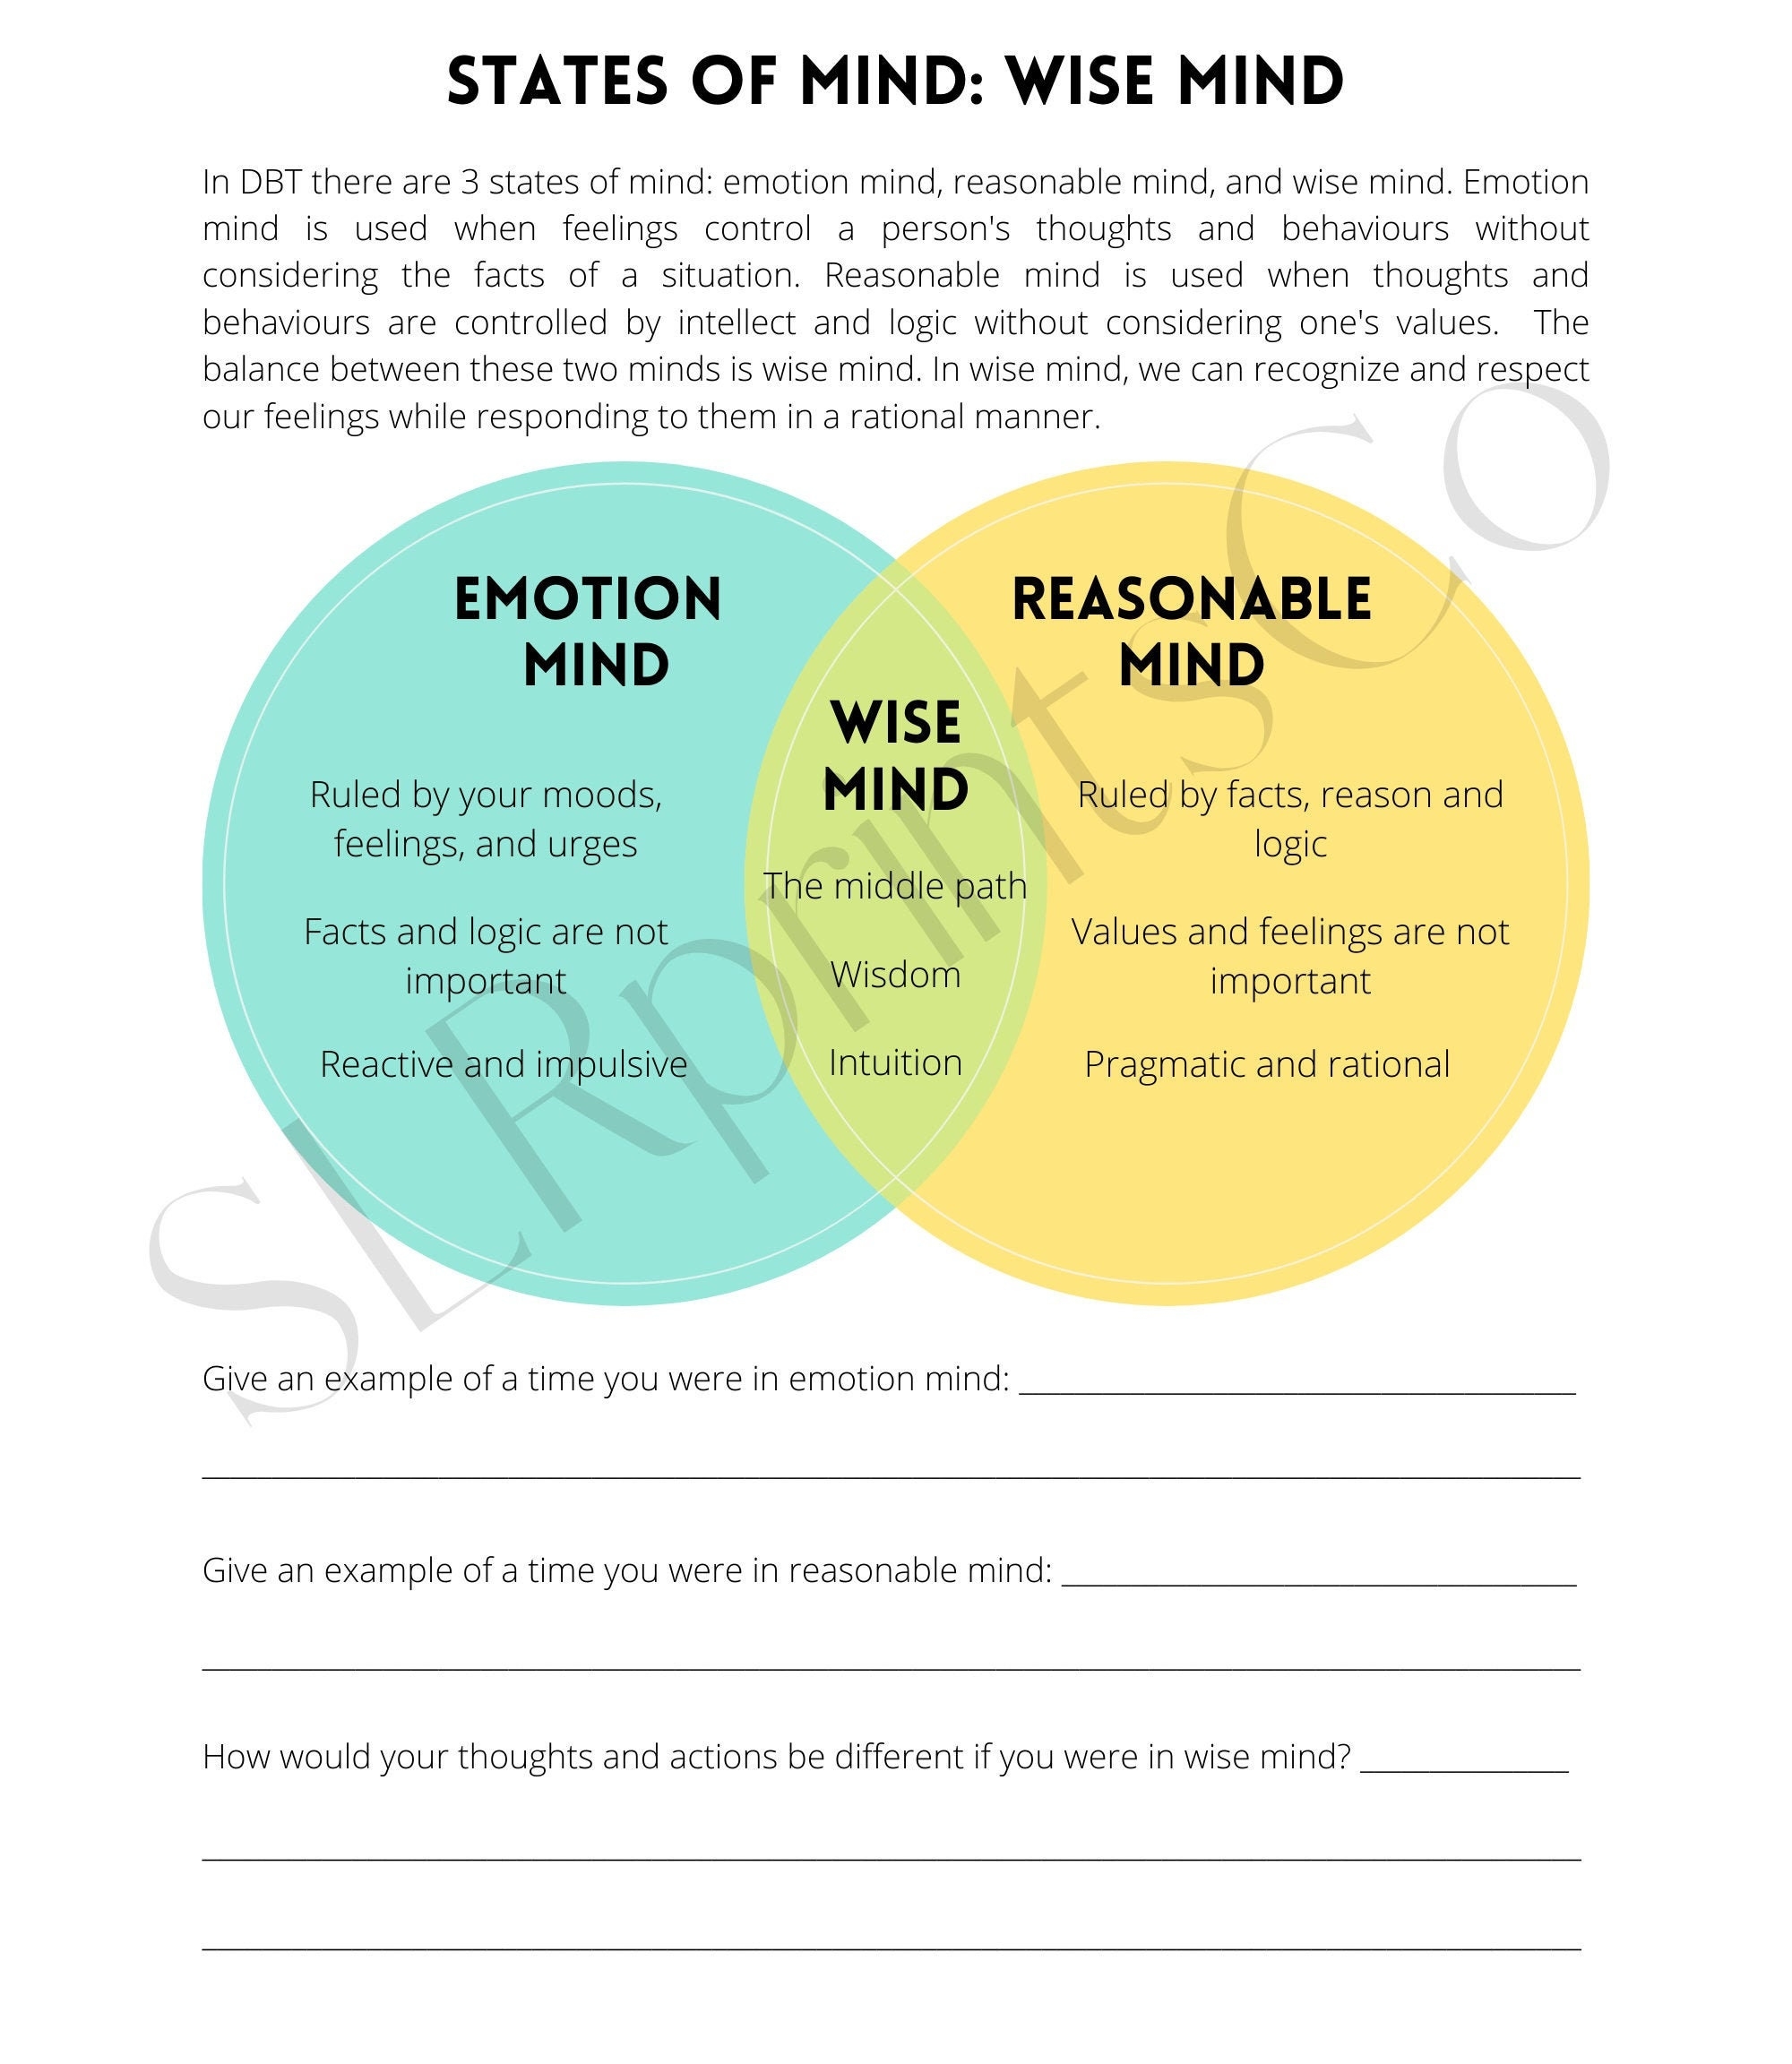 DBT Wise Mind Worksheet